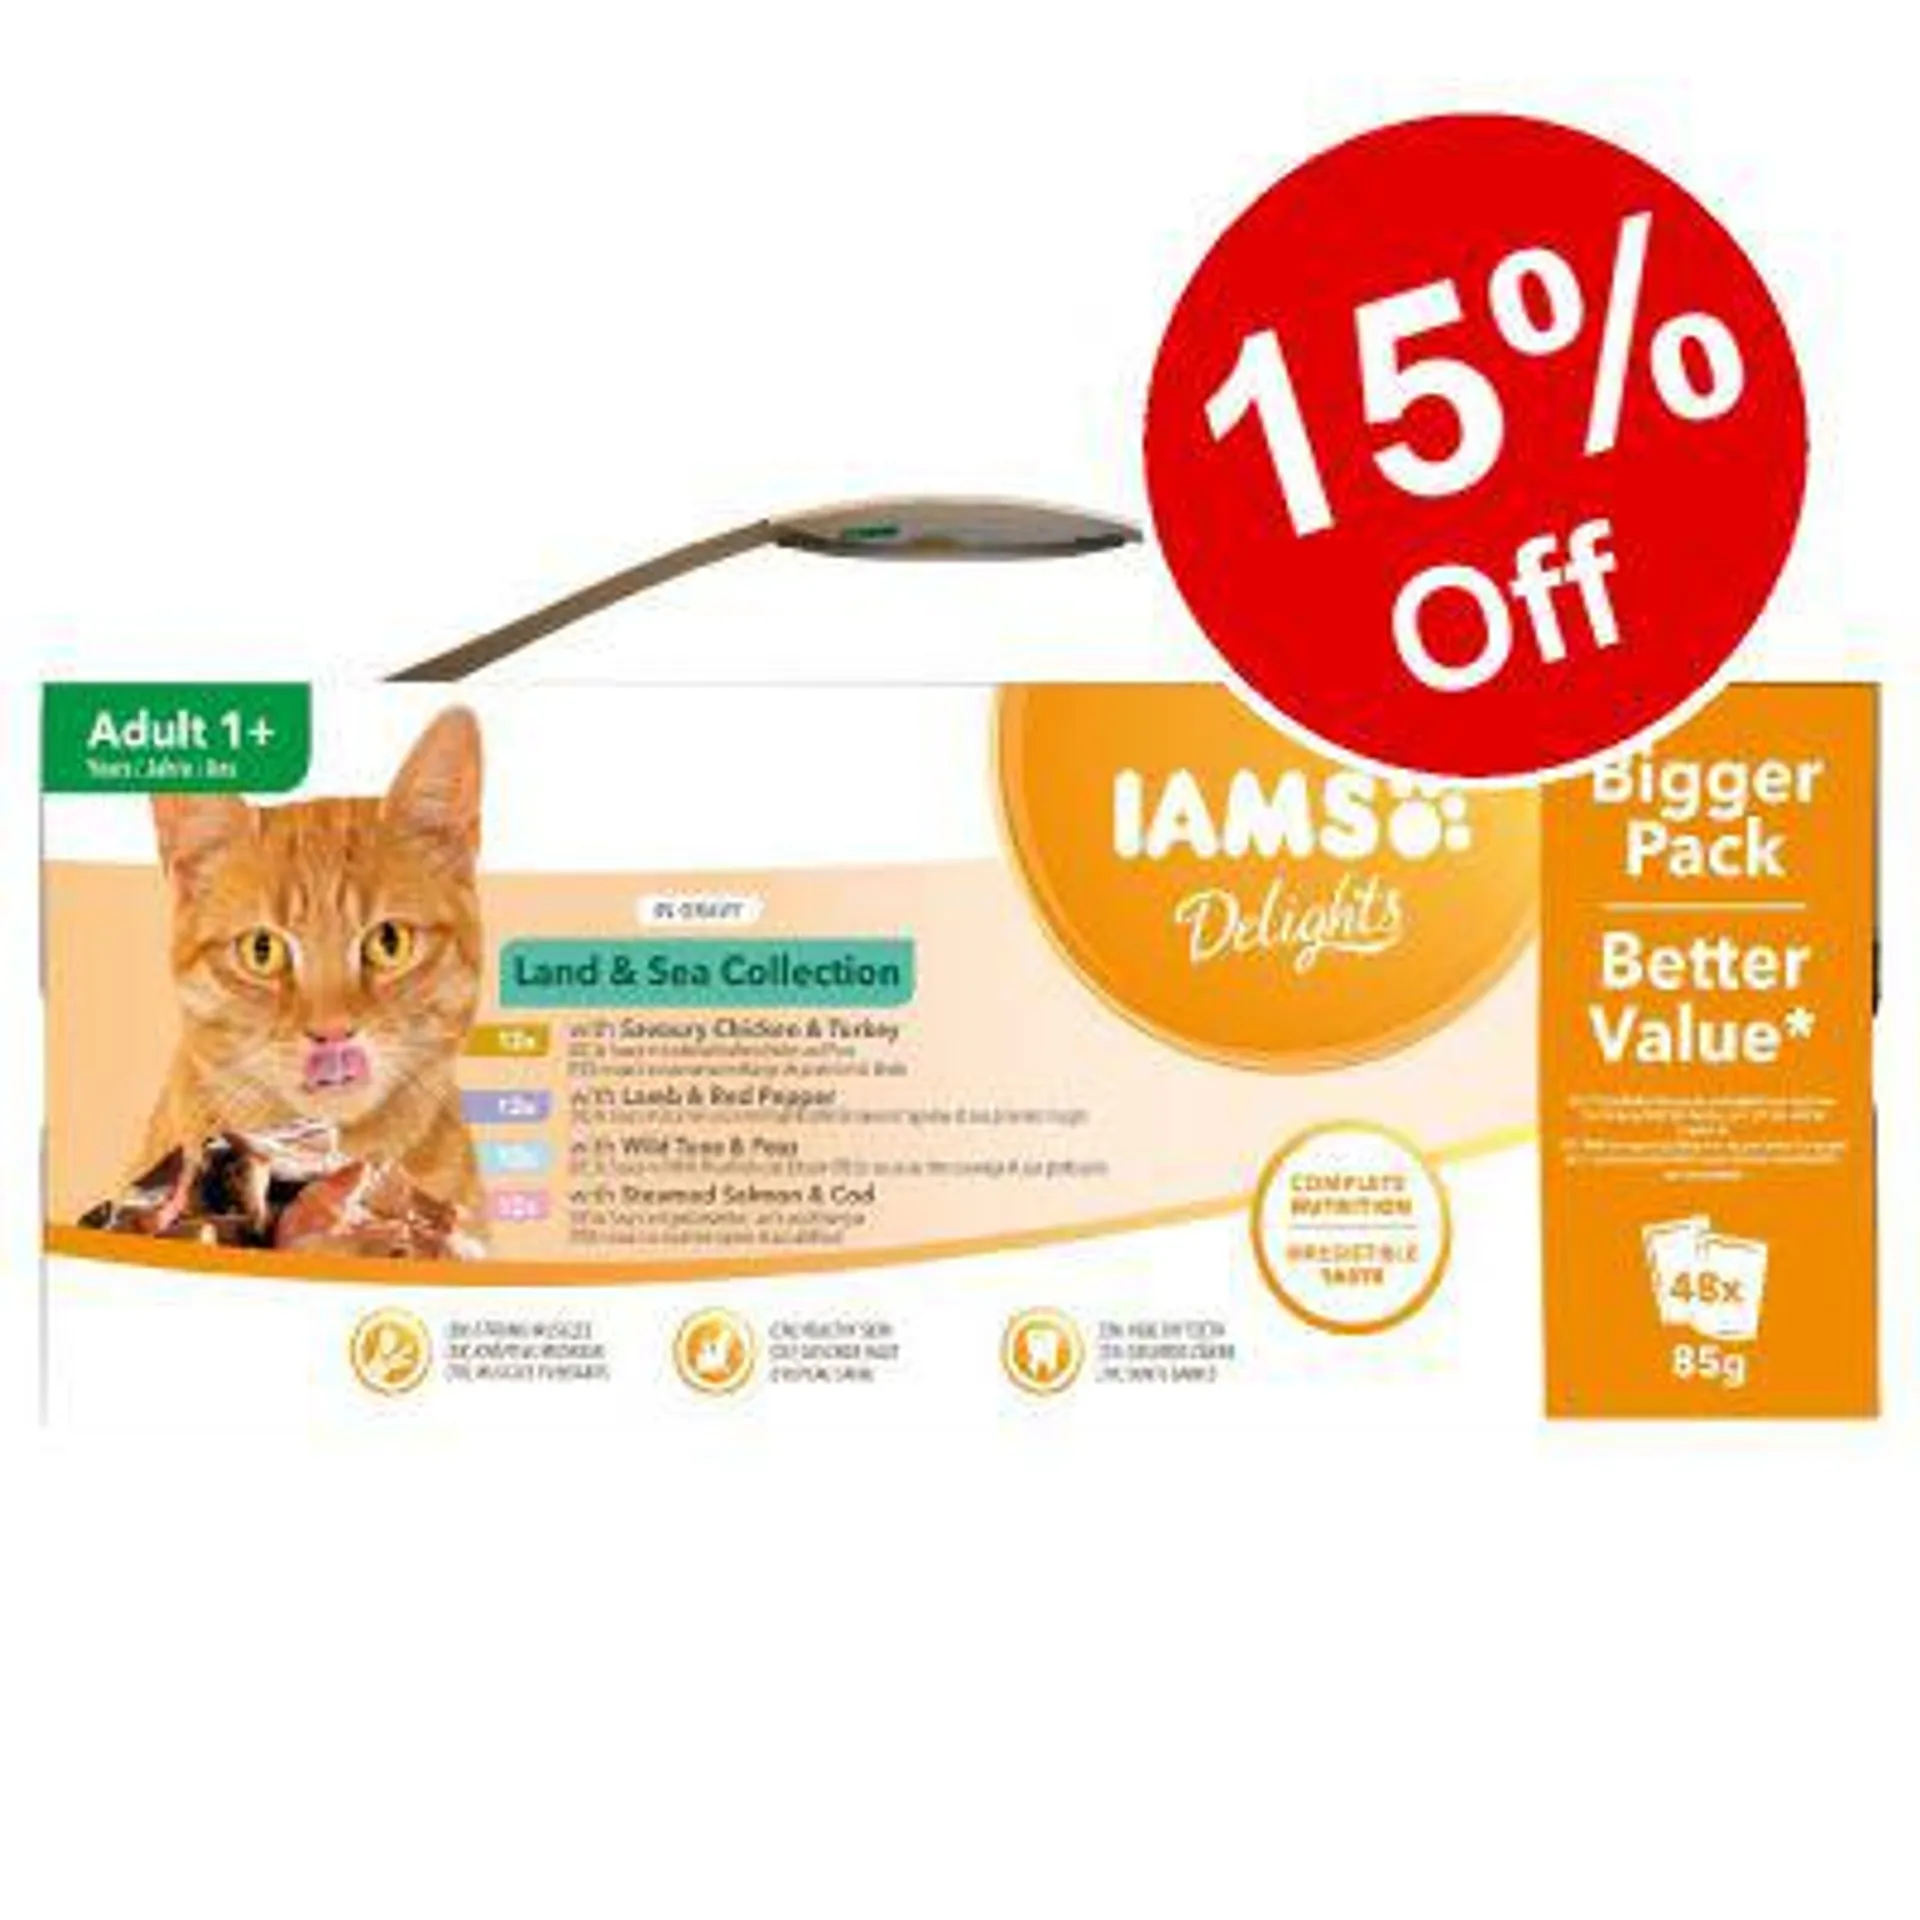 48 x 85g IAMS Delights Wet Cat Food – 15% Off!*